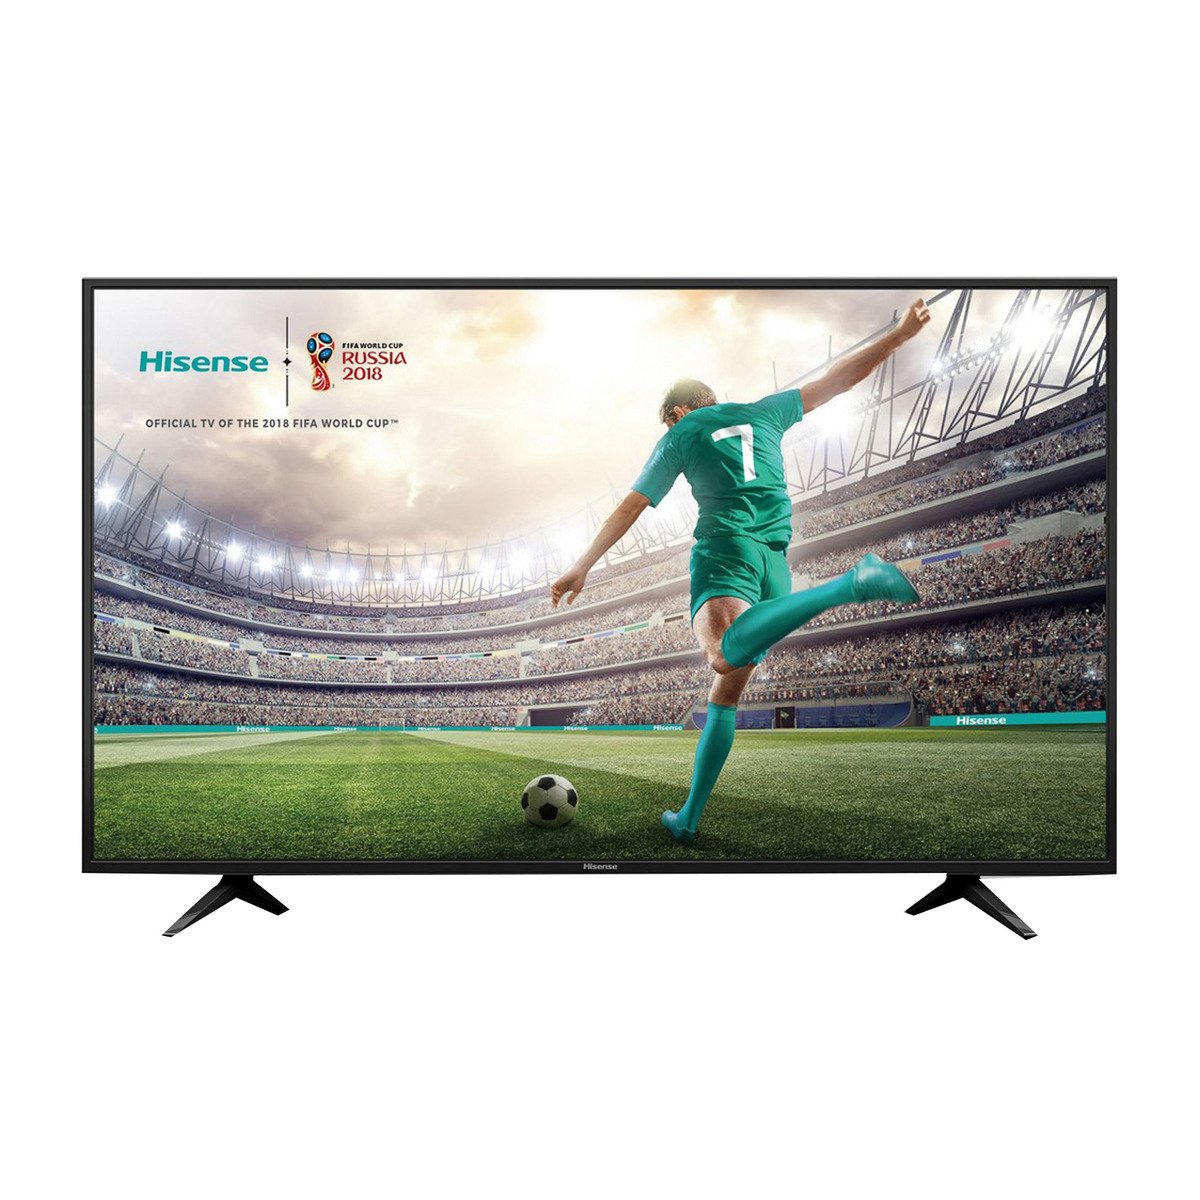 Hisense 4K Ultra HD Smart LED TV 55A6140UW 55inch